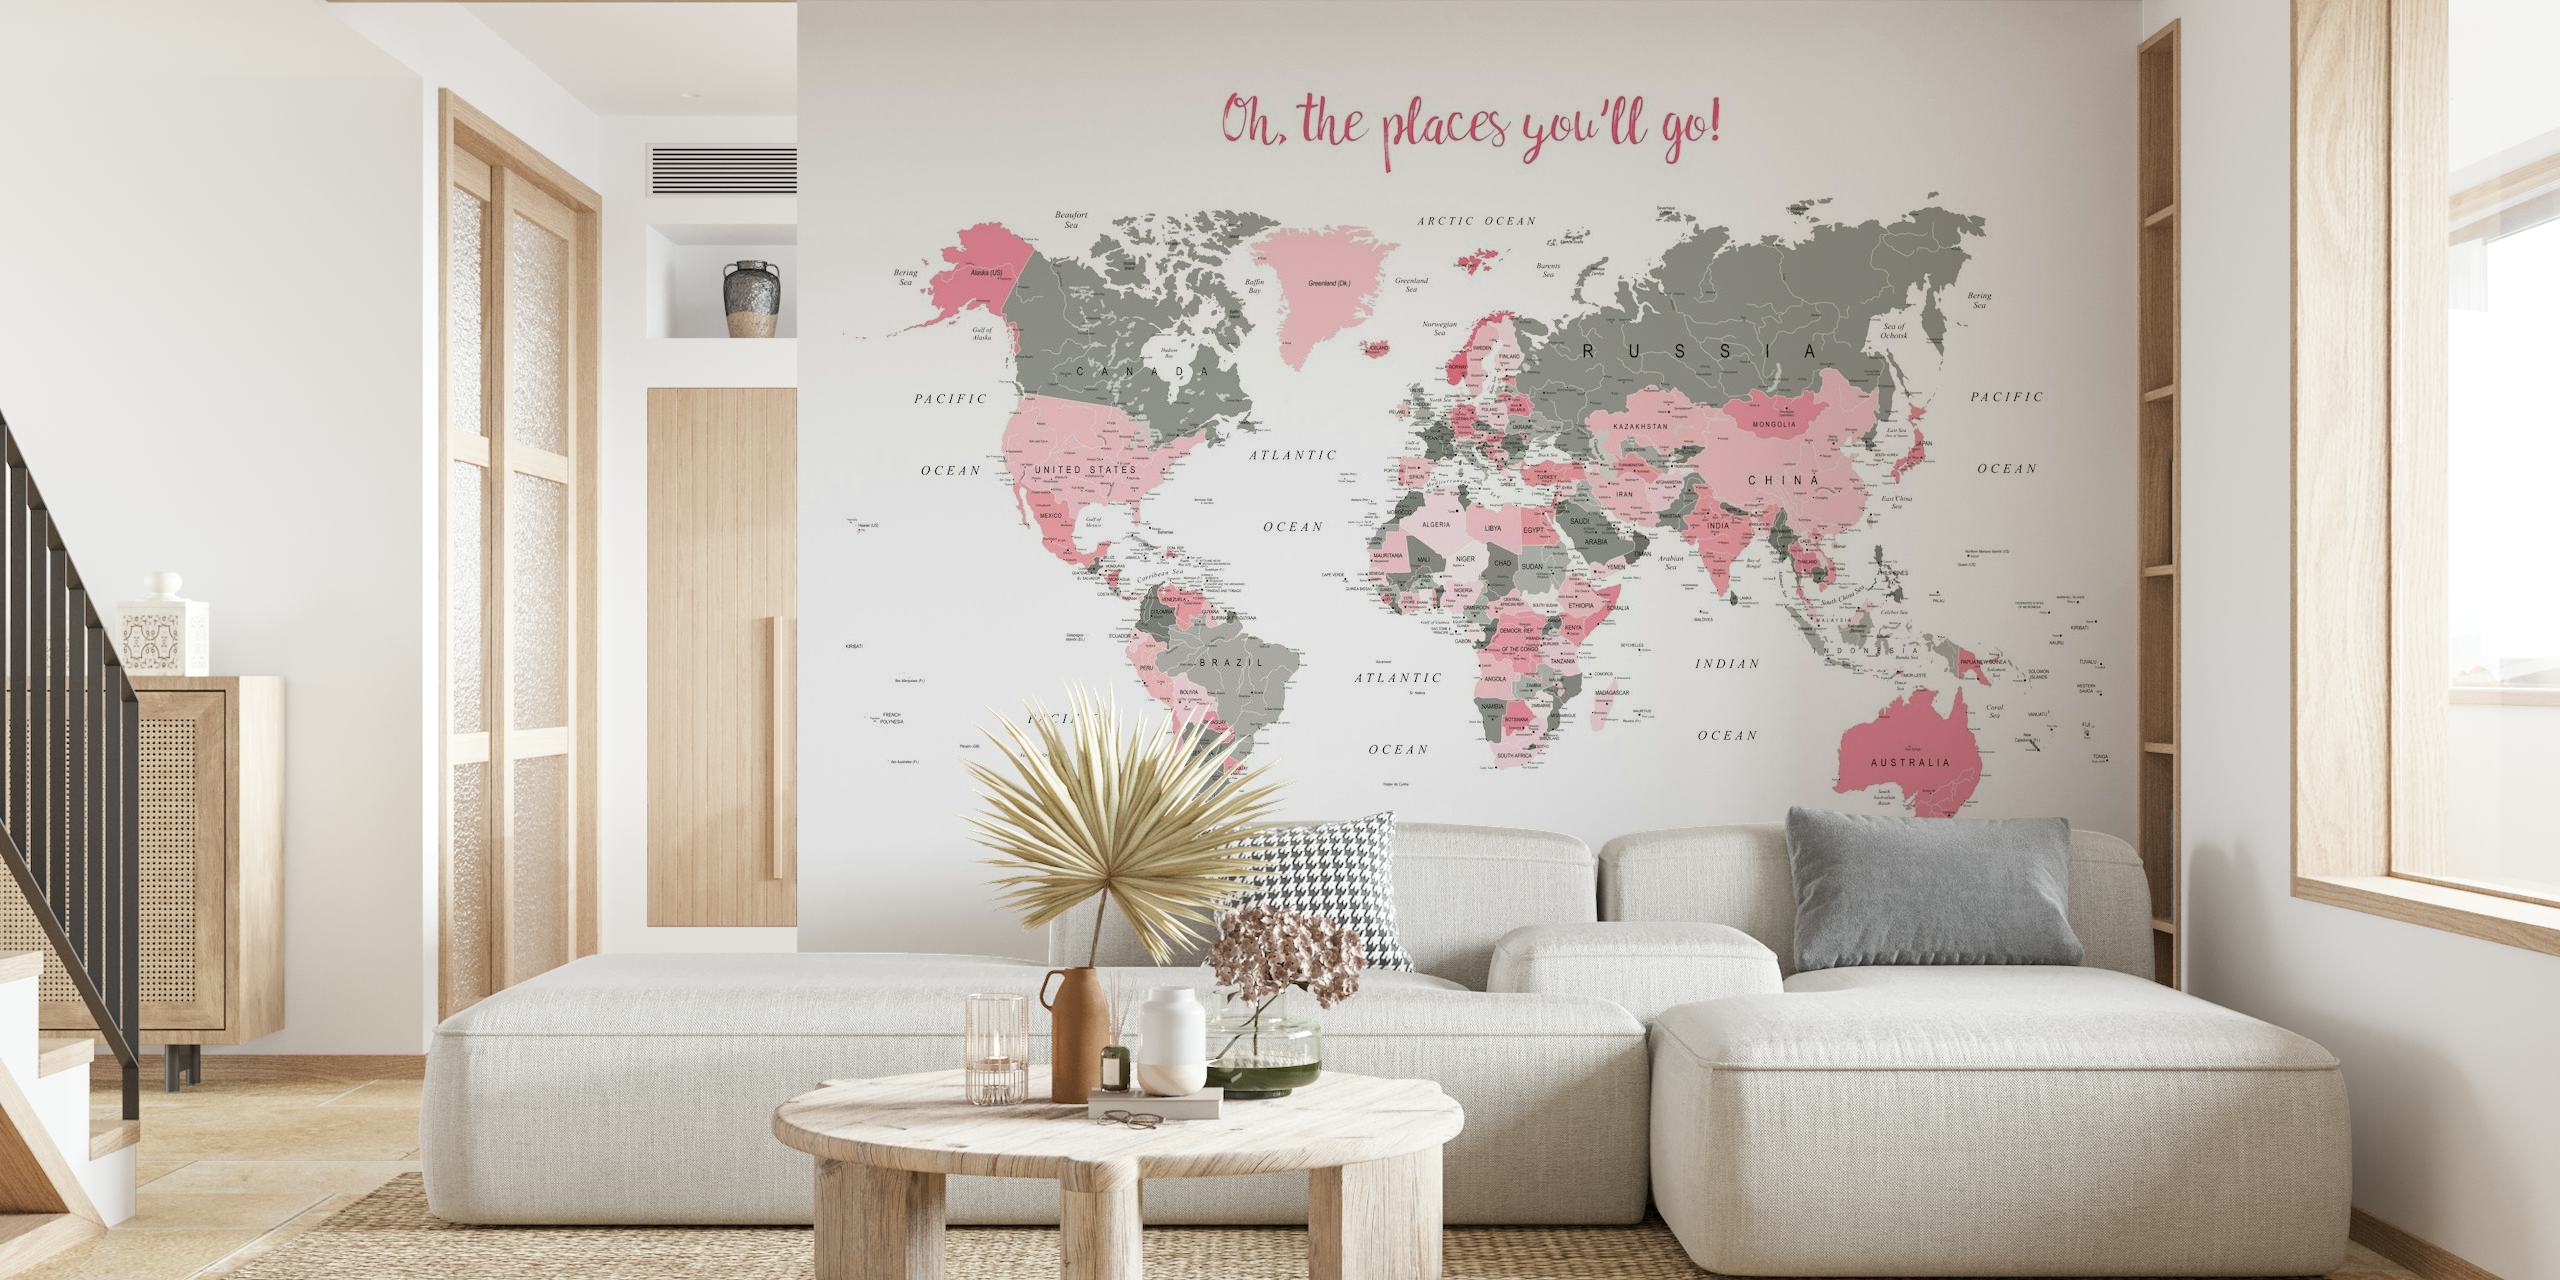 Elegante mural de pared con un mapa mundial con reflejos rosas y la frase "¡Oh, los lugares a los que irás!" para decoración del hogar.